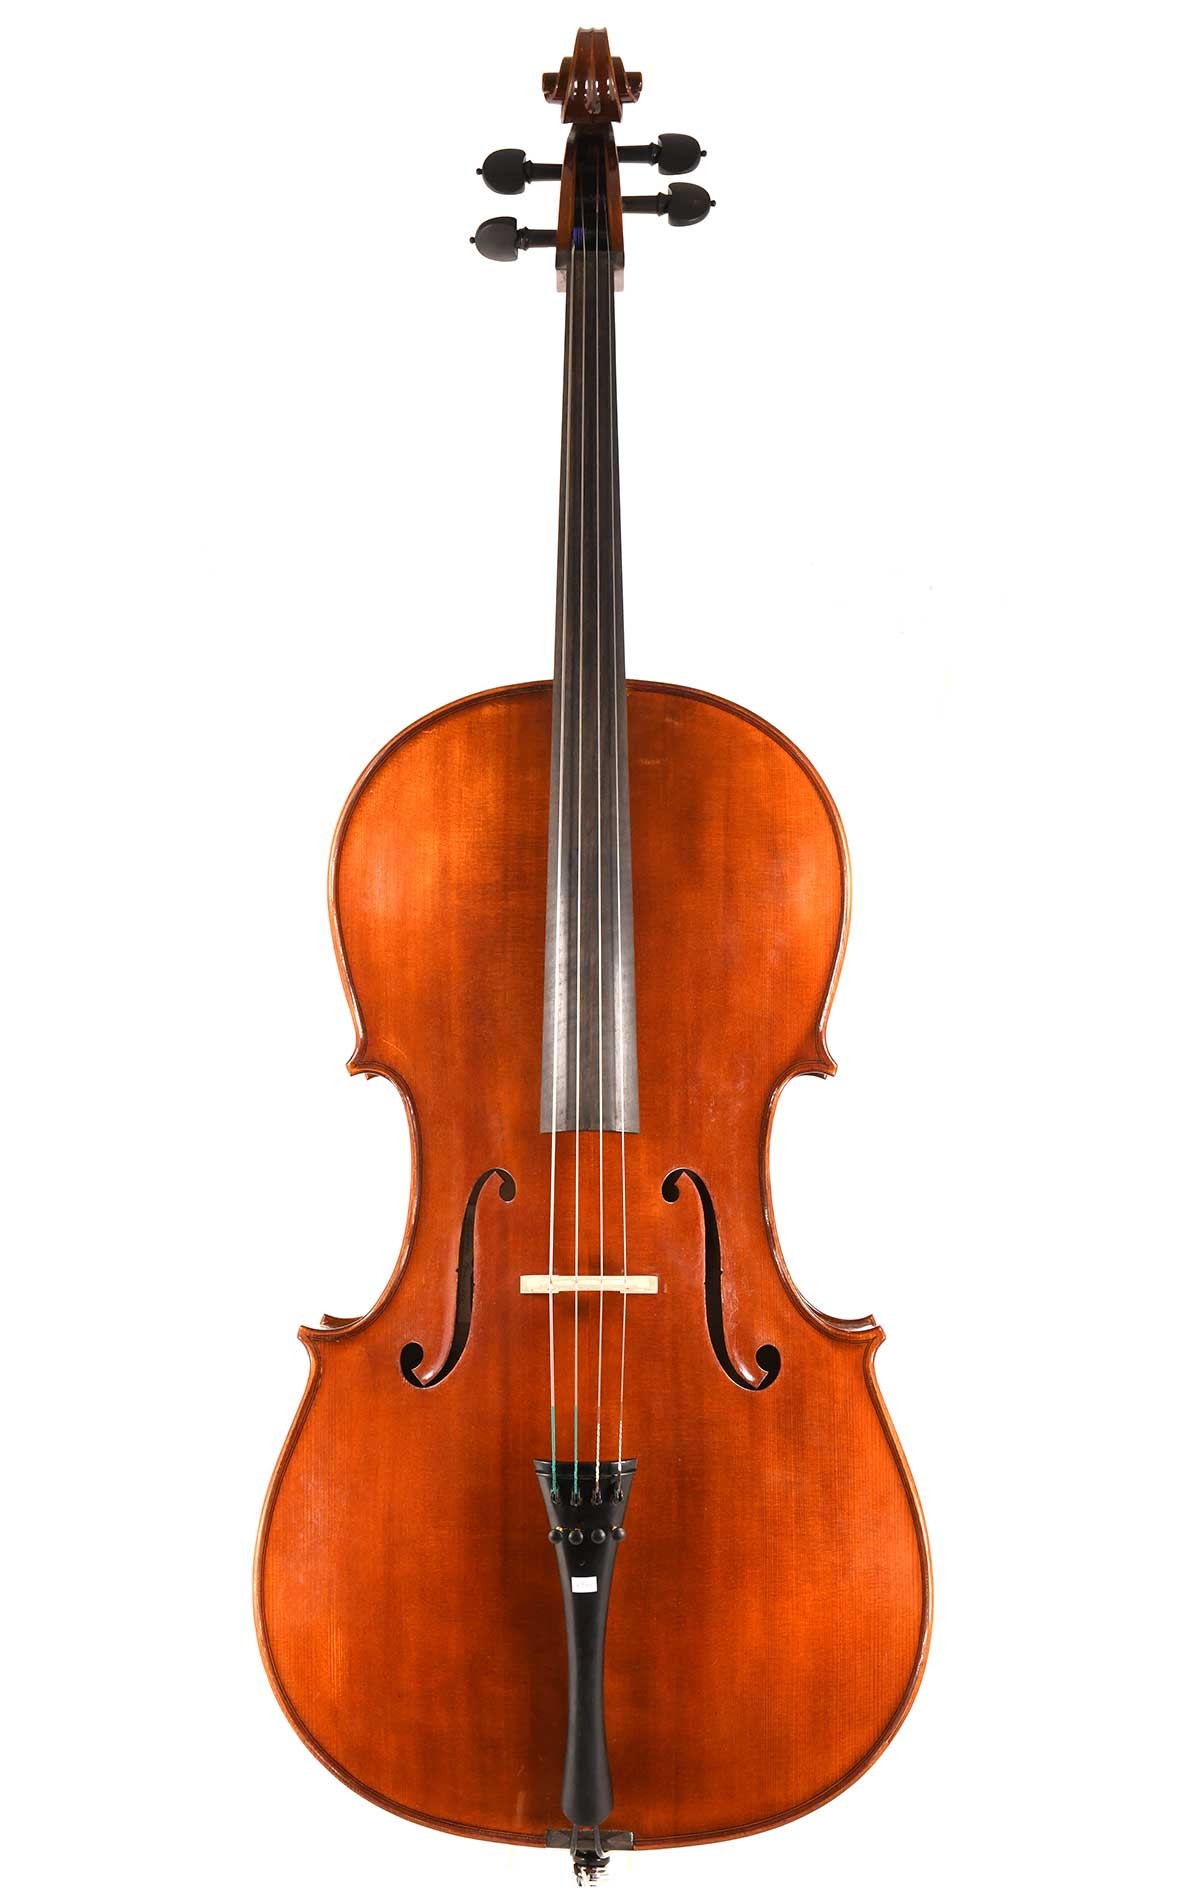 Mario Gadda, Italian cello from 1982